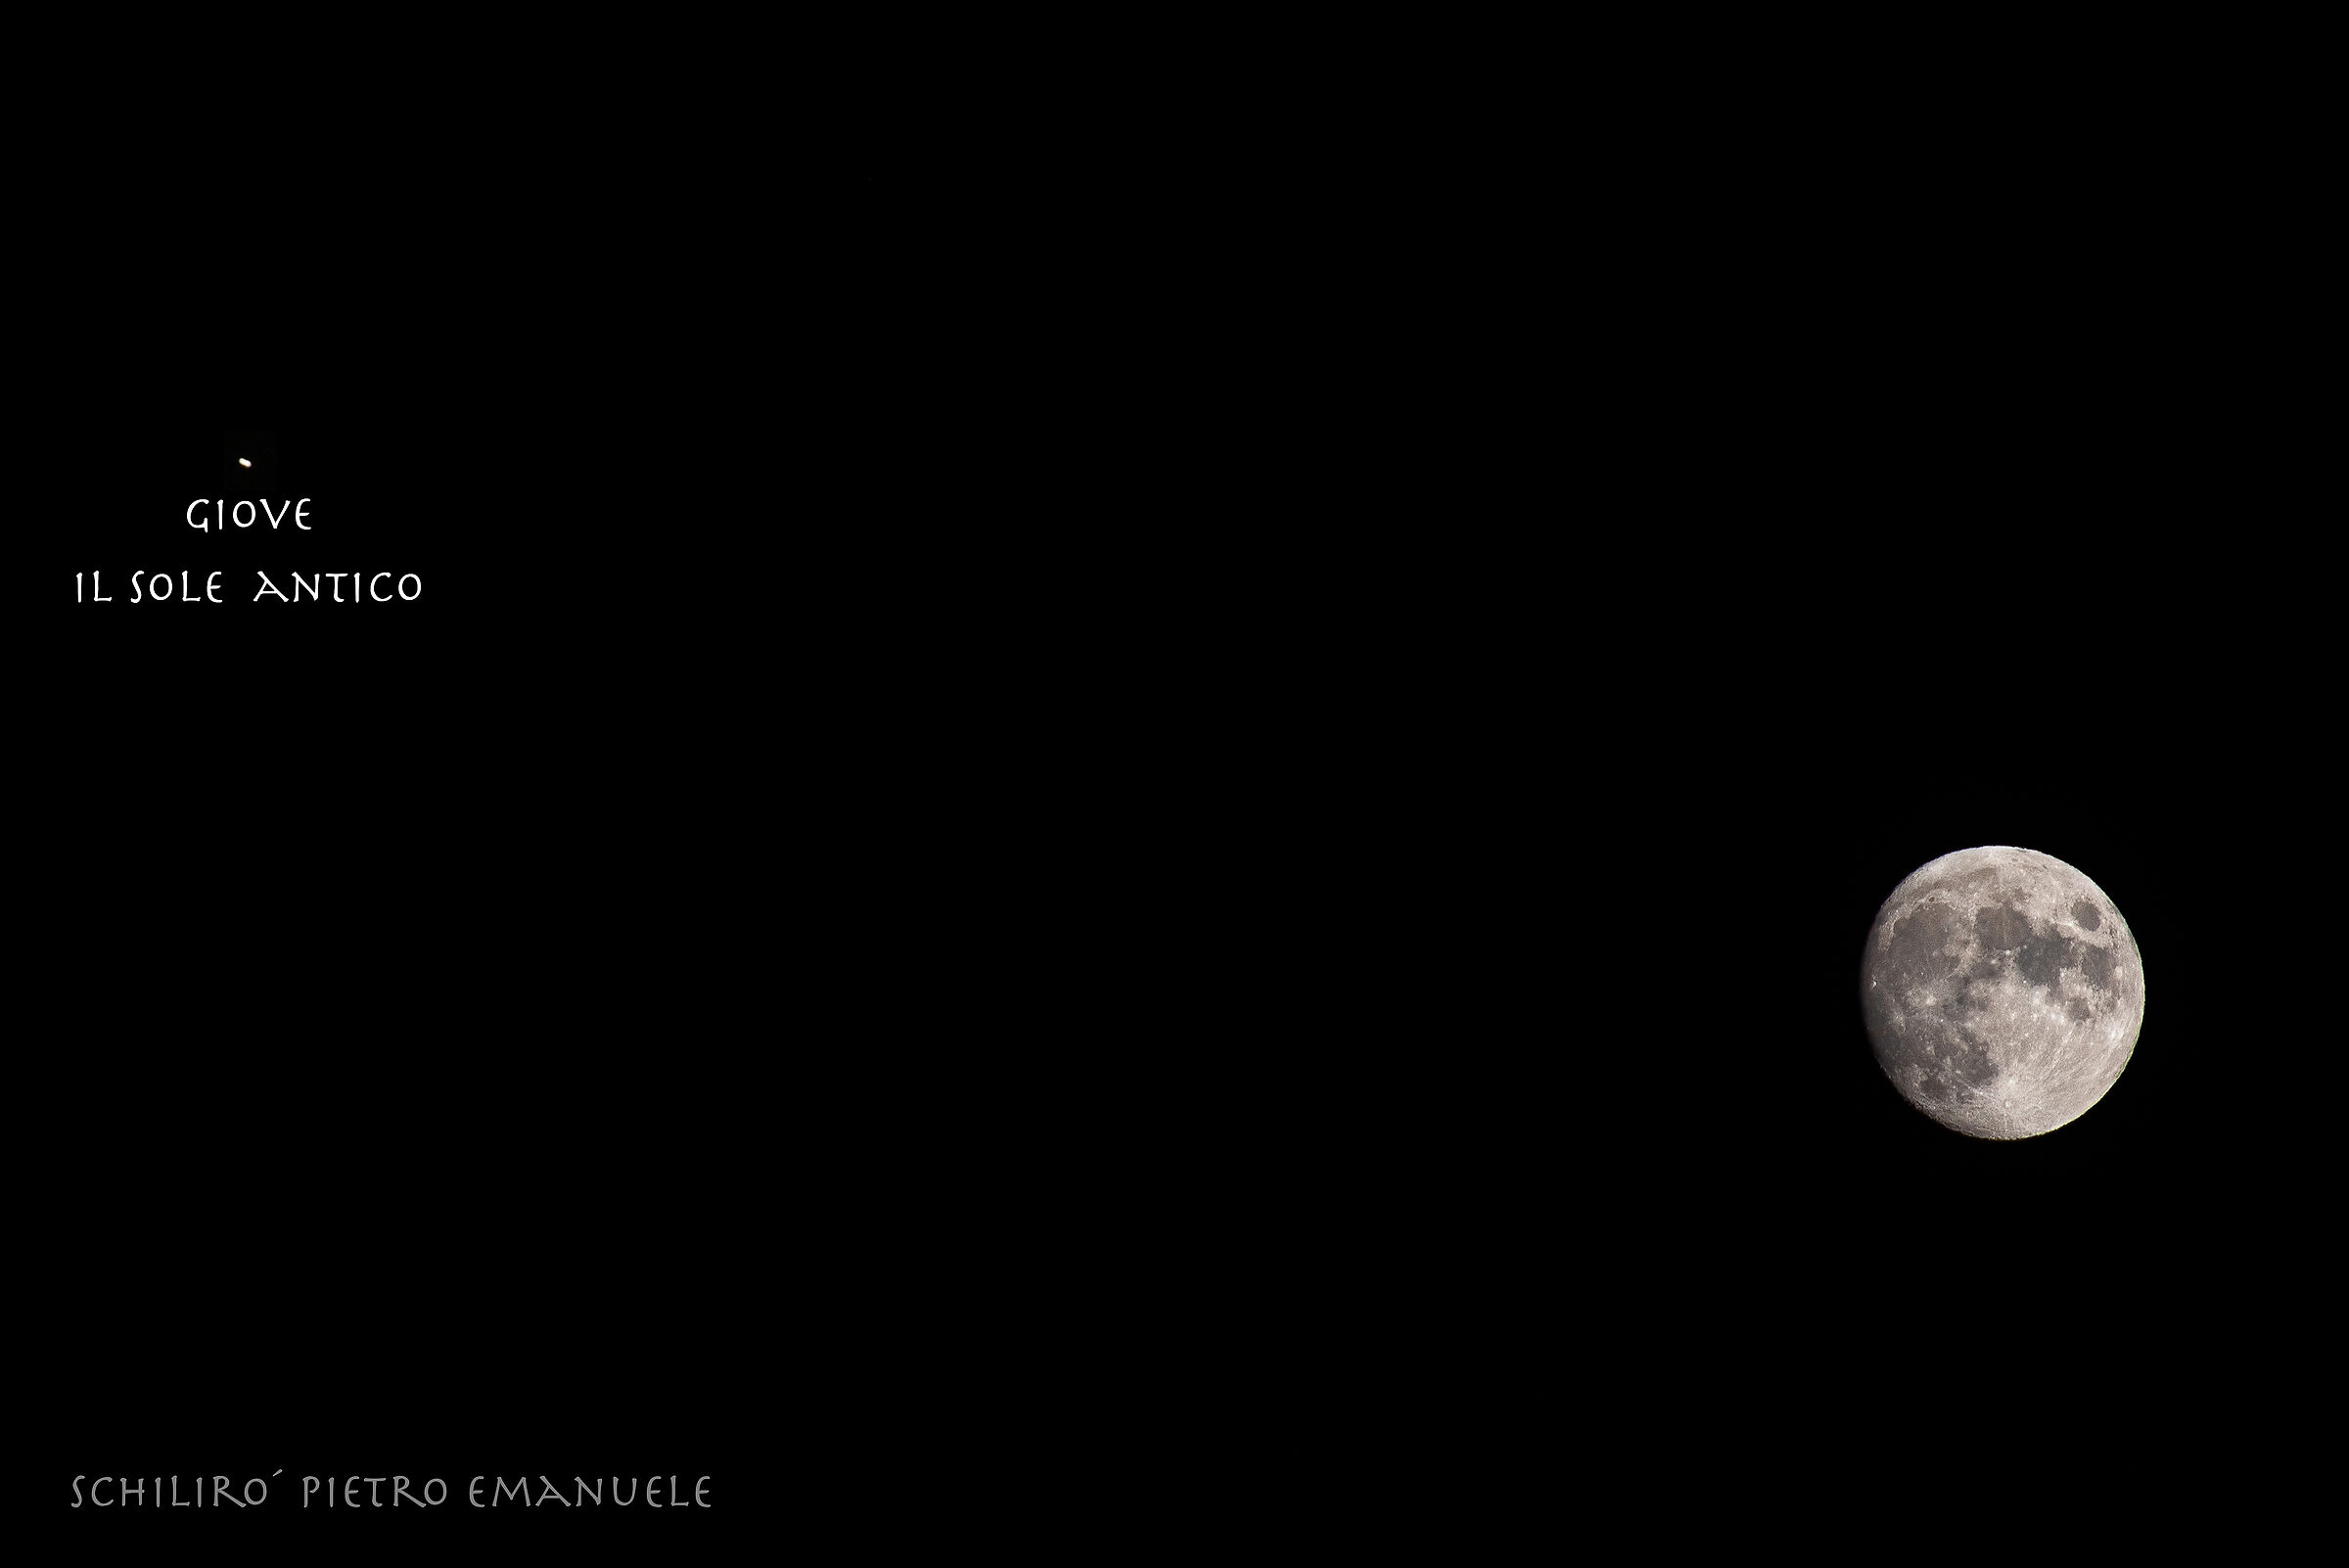 Moon and Jupiter at 300 mm...